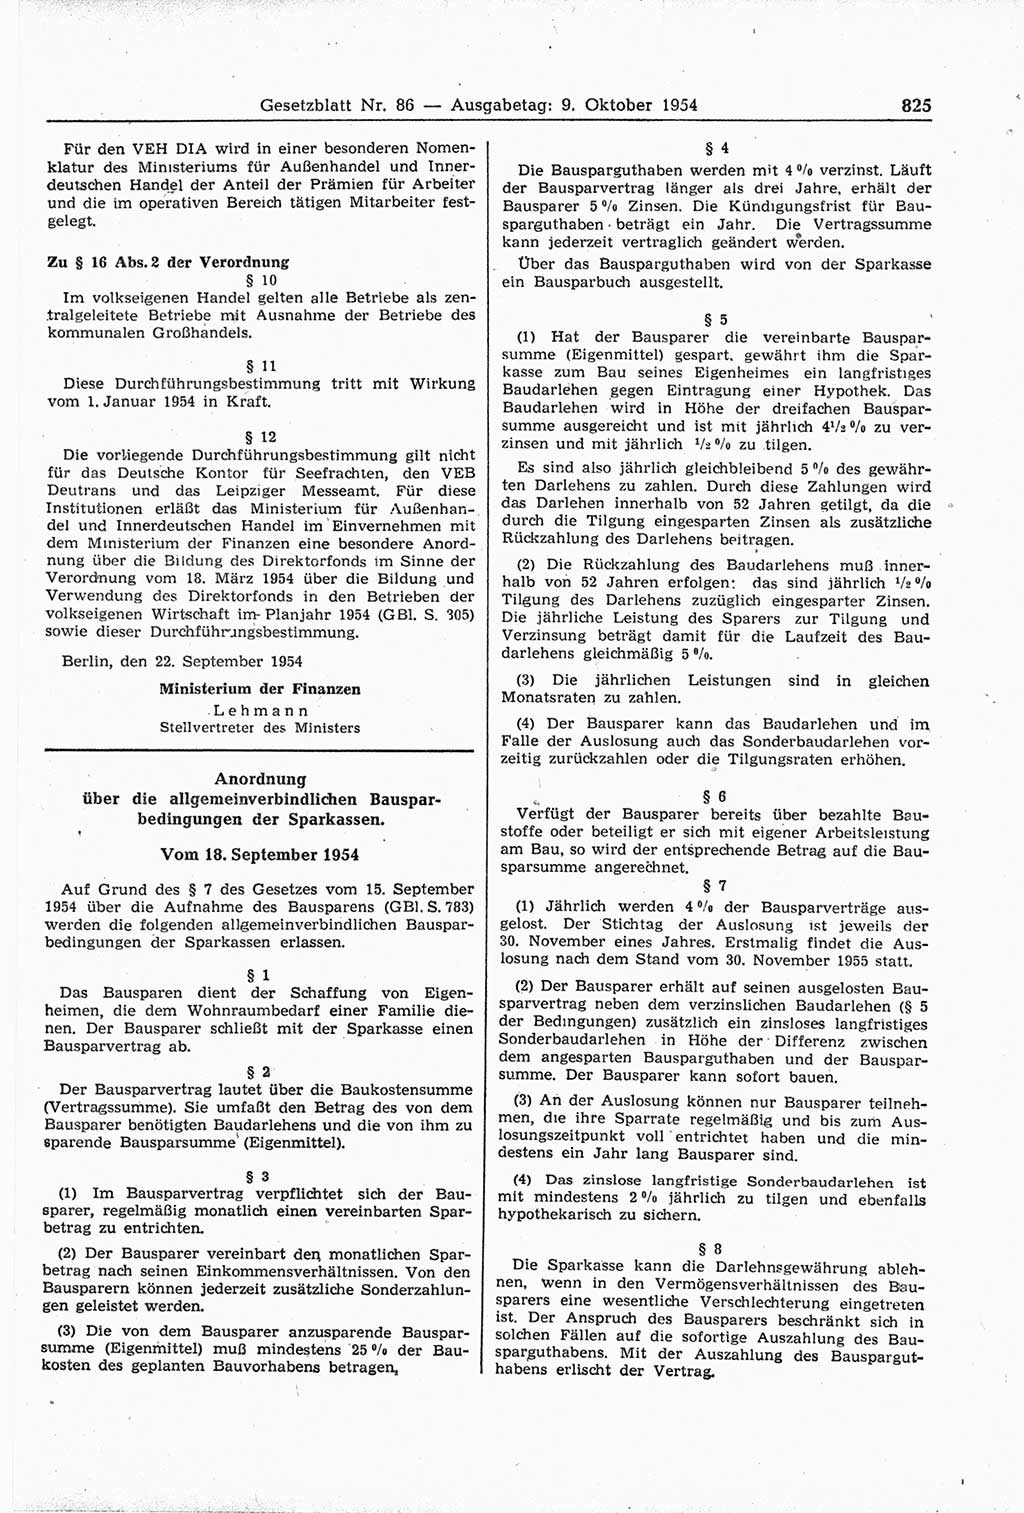 Gesetzblatt (GBl.) der Deutschen Demokratischen Republik (DDR) 1954, Seite 825 (GBl. DDR 1954, S. 825)